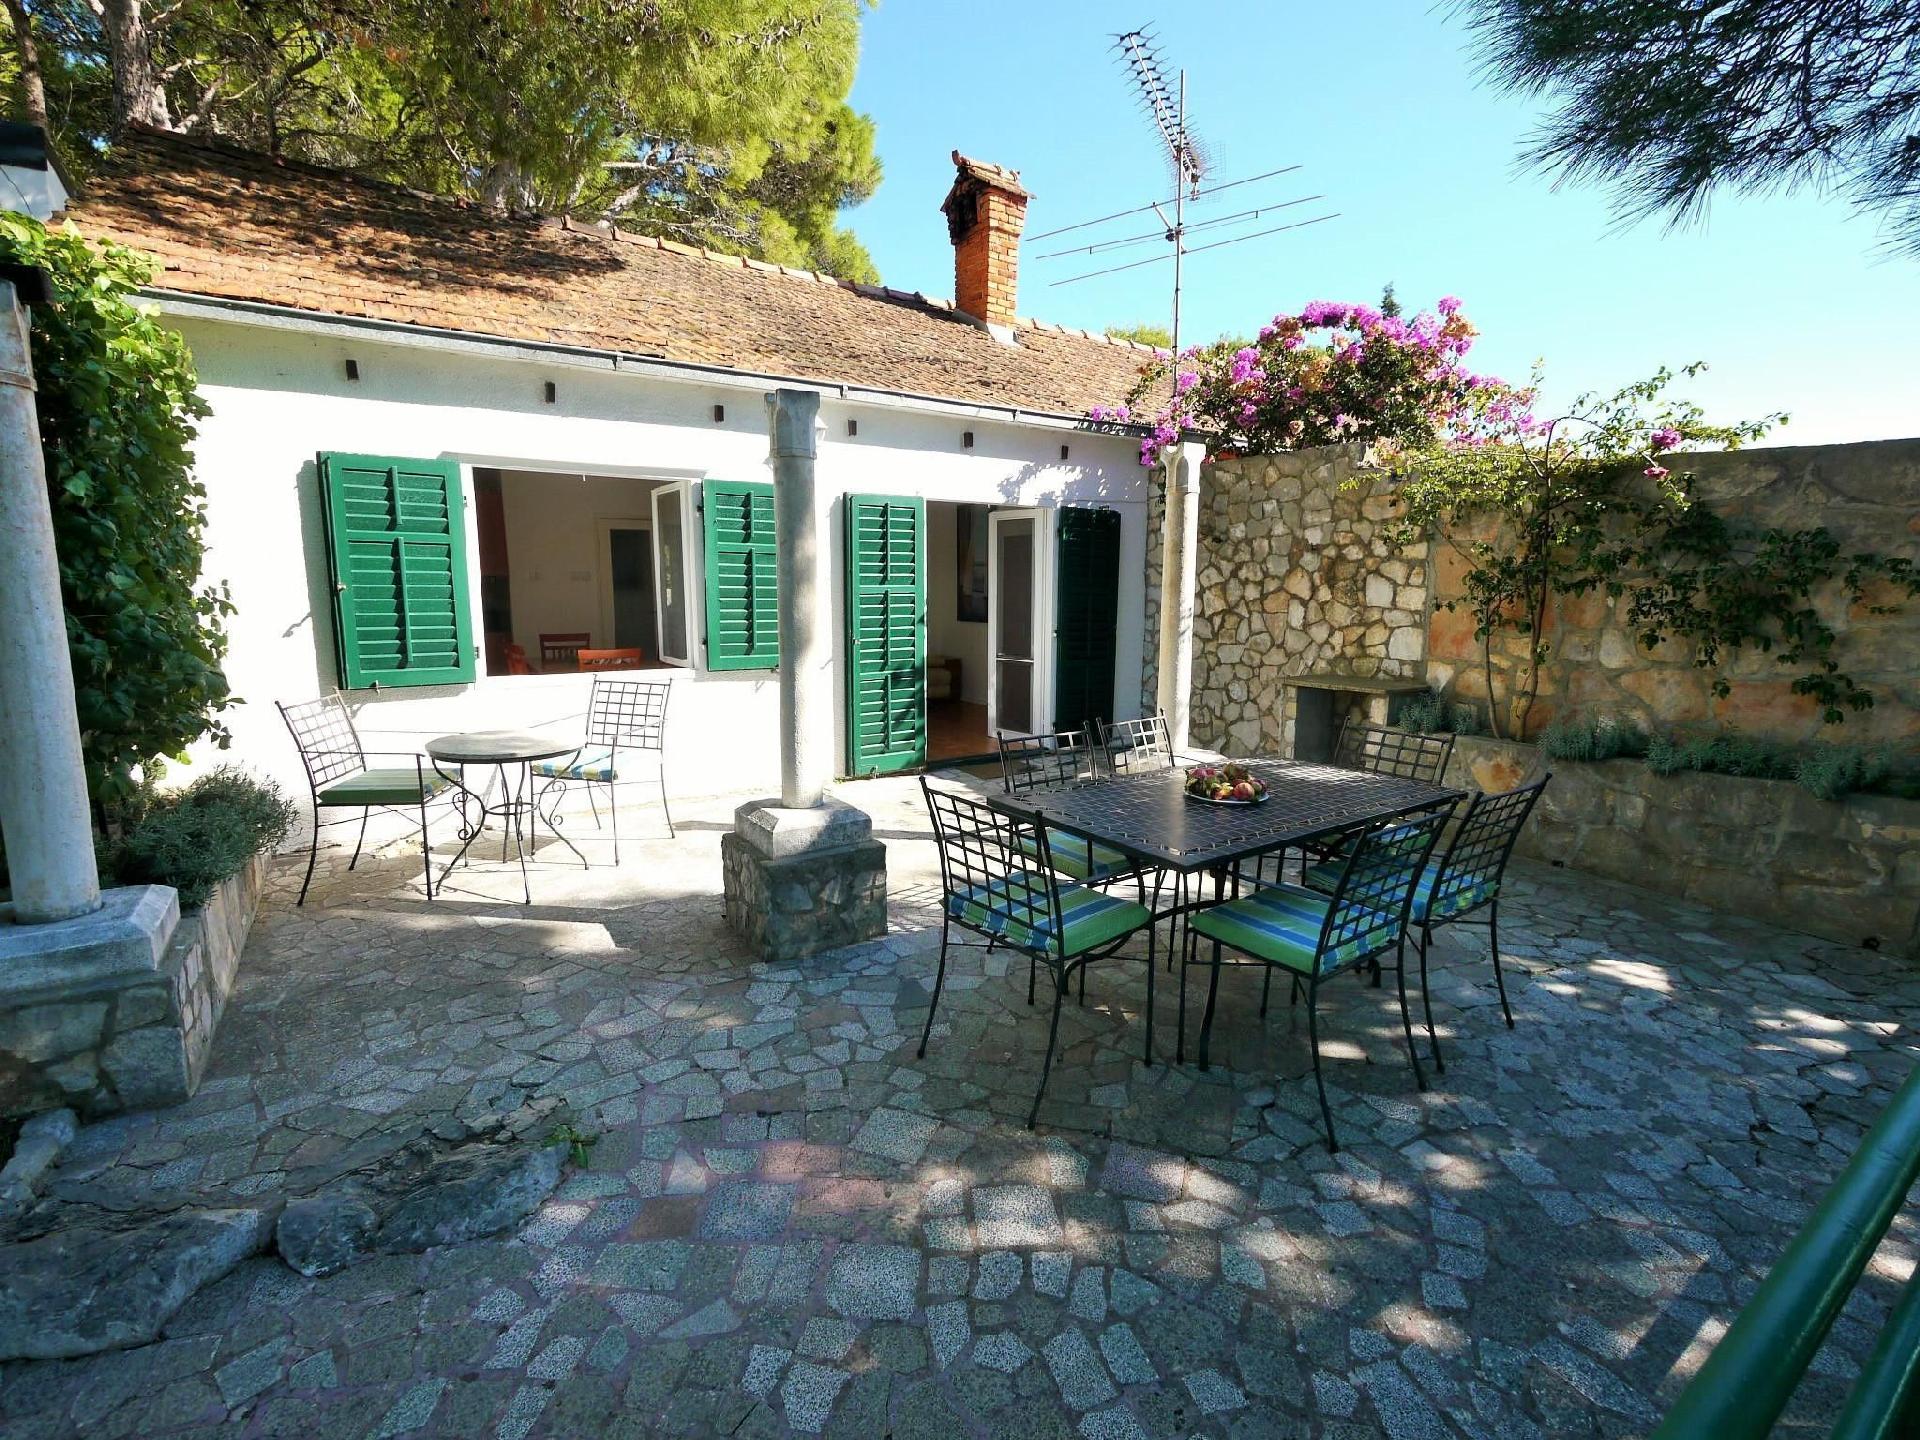 Ferienhaus mit moderner Einrichtung sowie einer Te Ferienhaus in Dalmatien